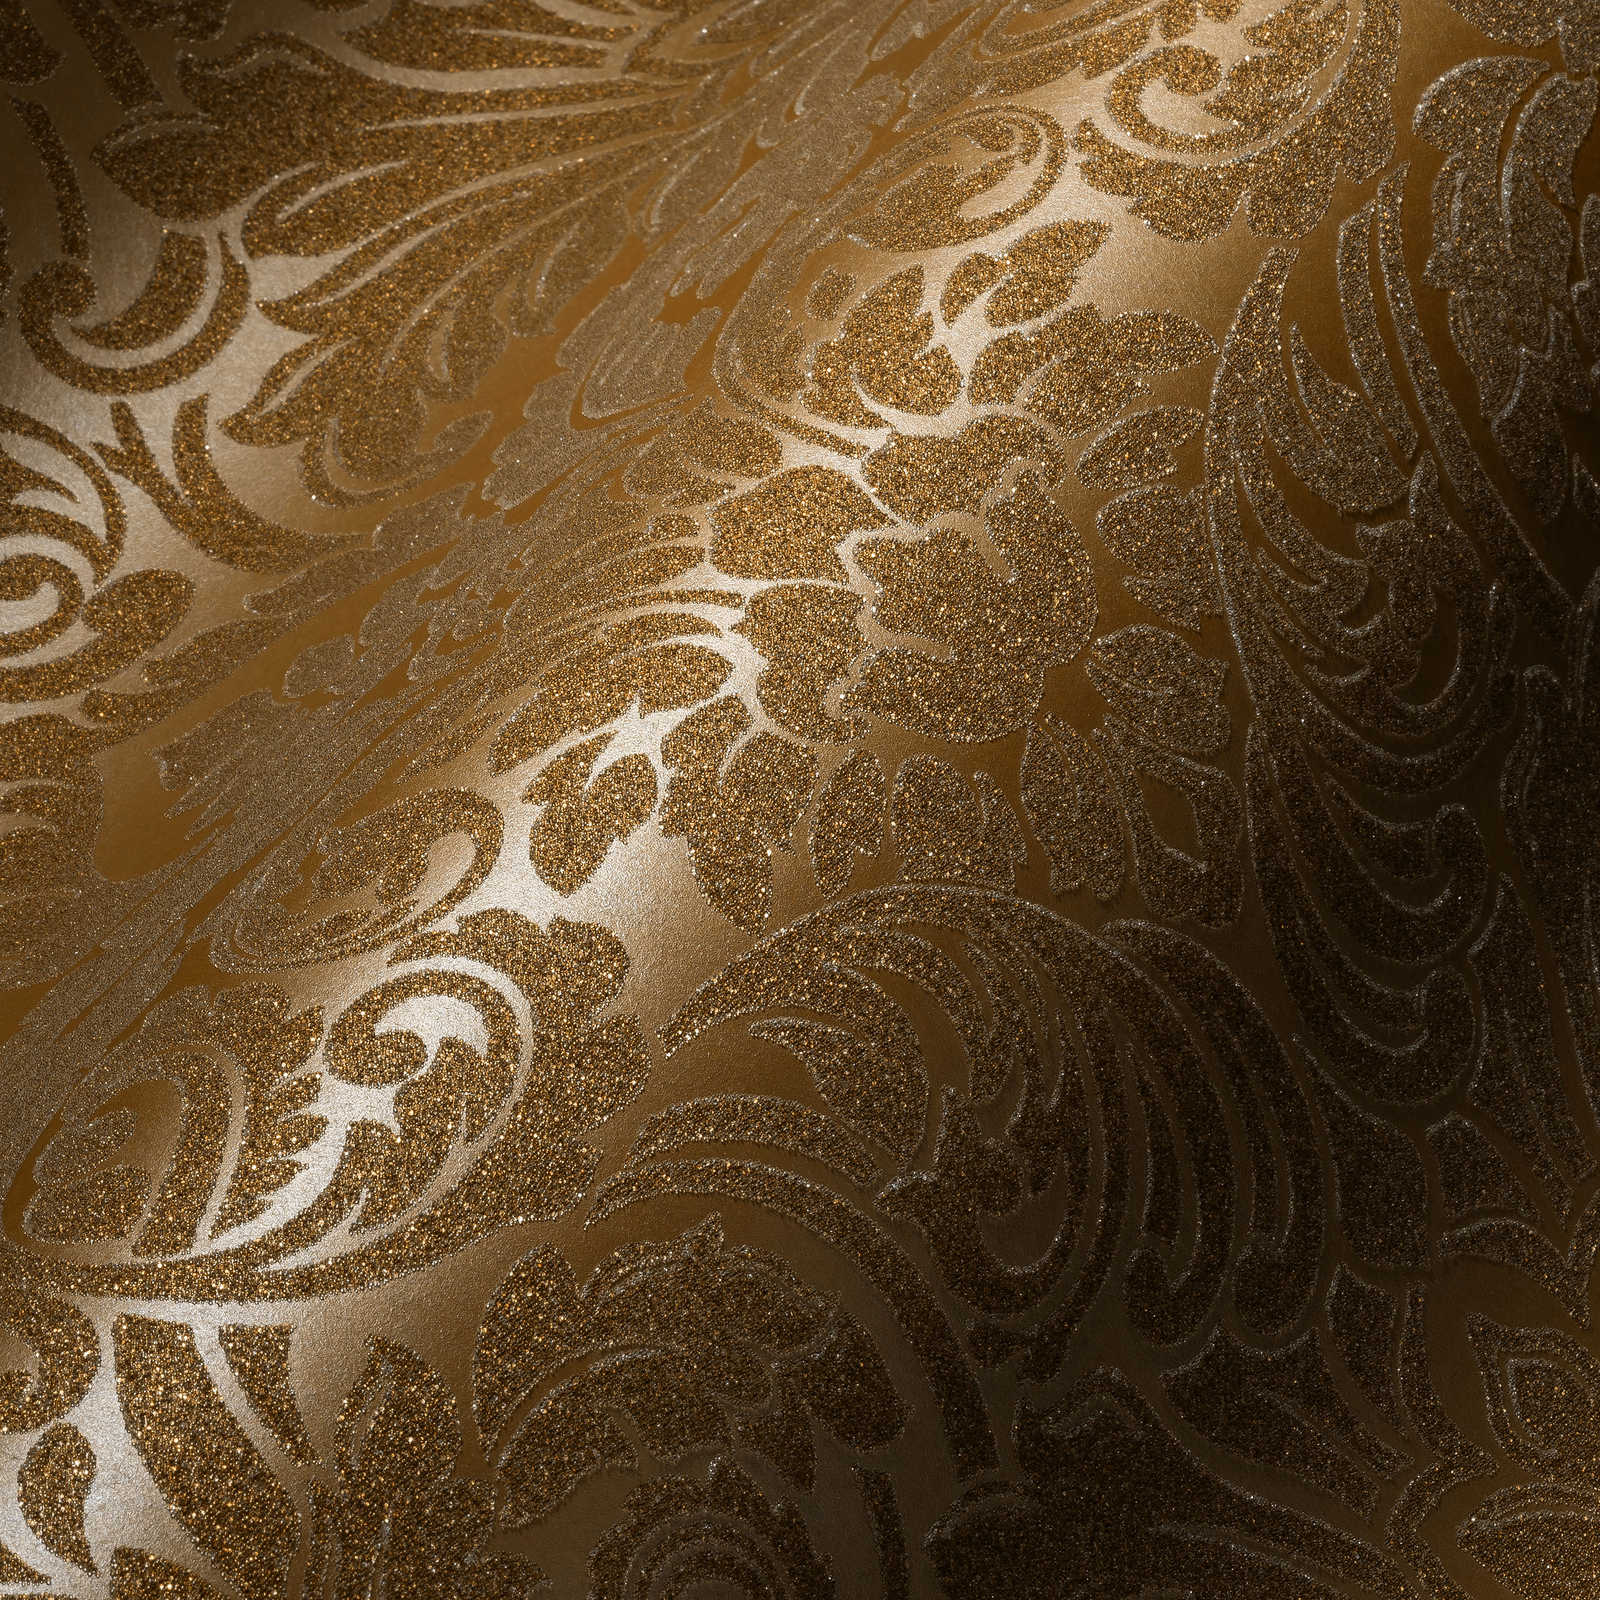             Ornamenteel behang met metallic effect & bloemmotief - goud
        